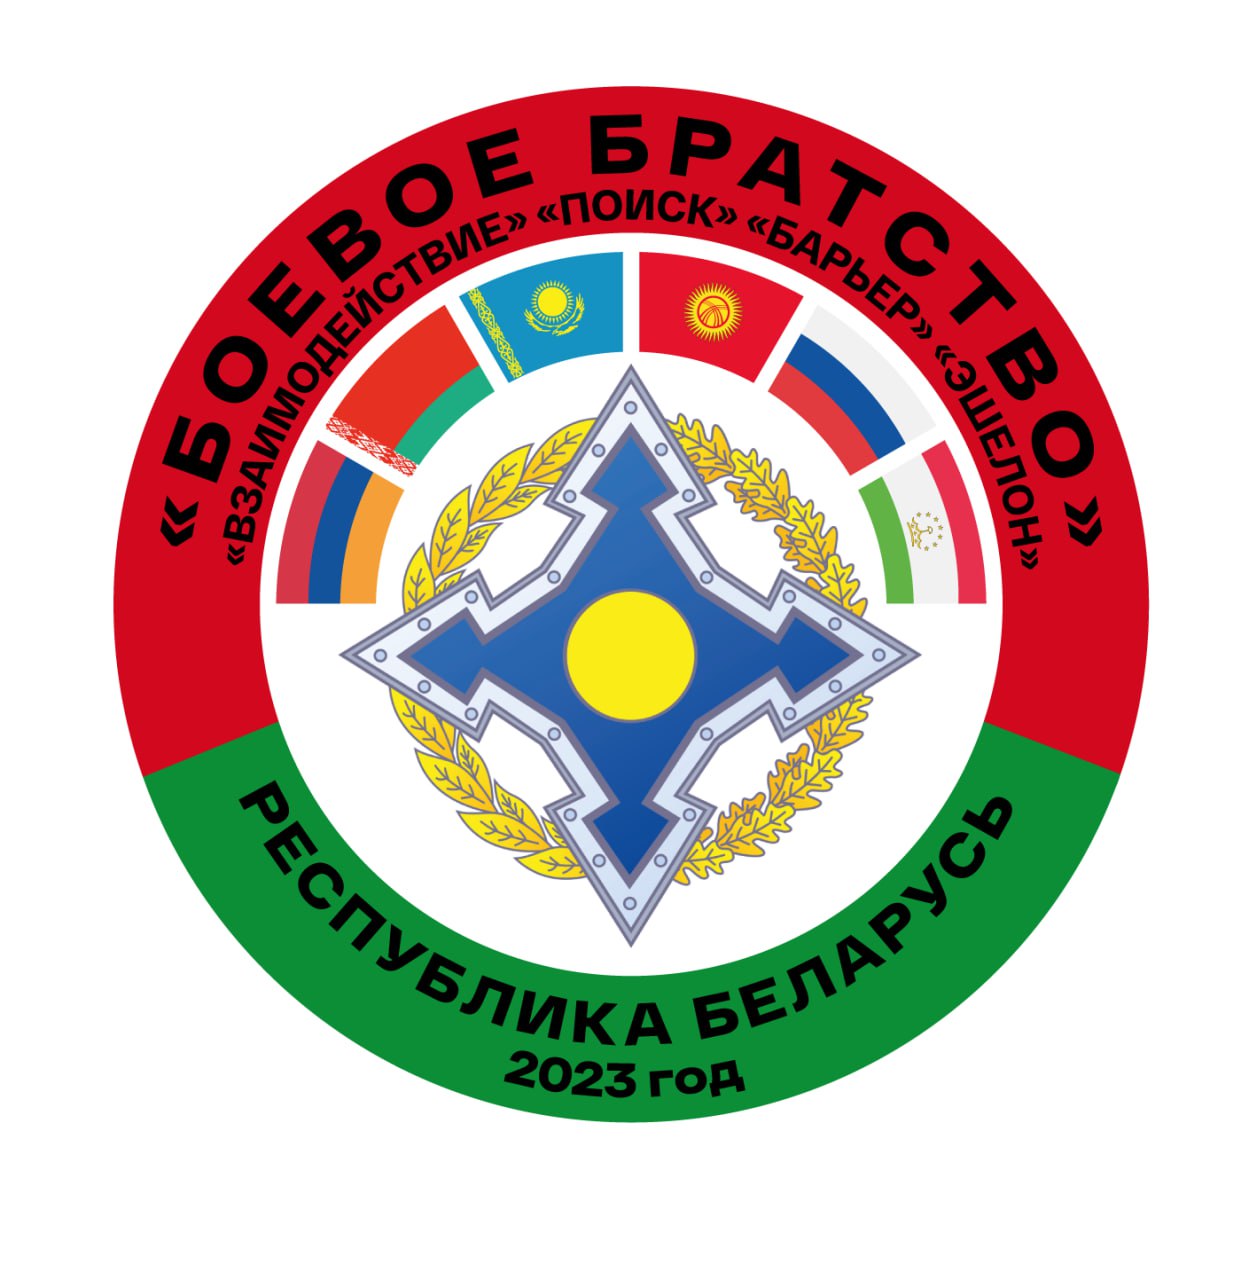 Учение ОДКБ «Боевое братство-2023» начнется в Беларуси 1 сентября